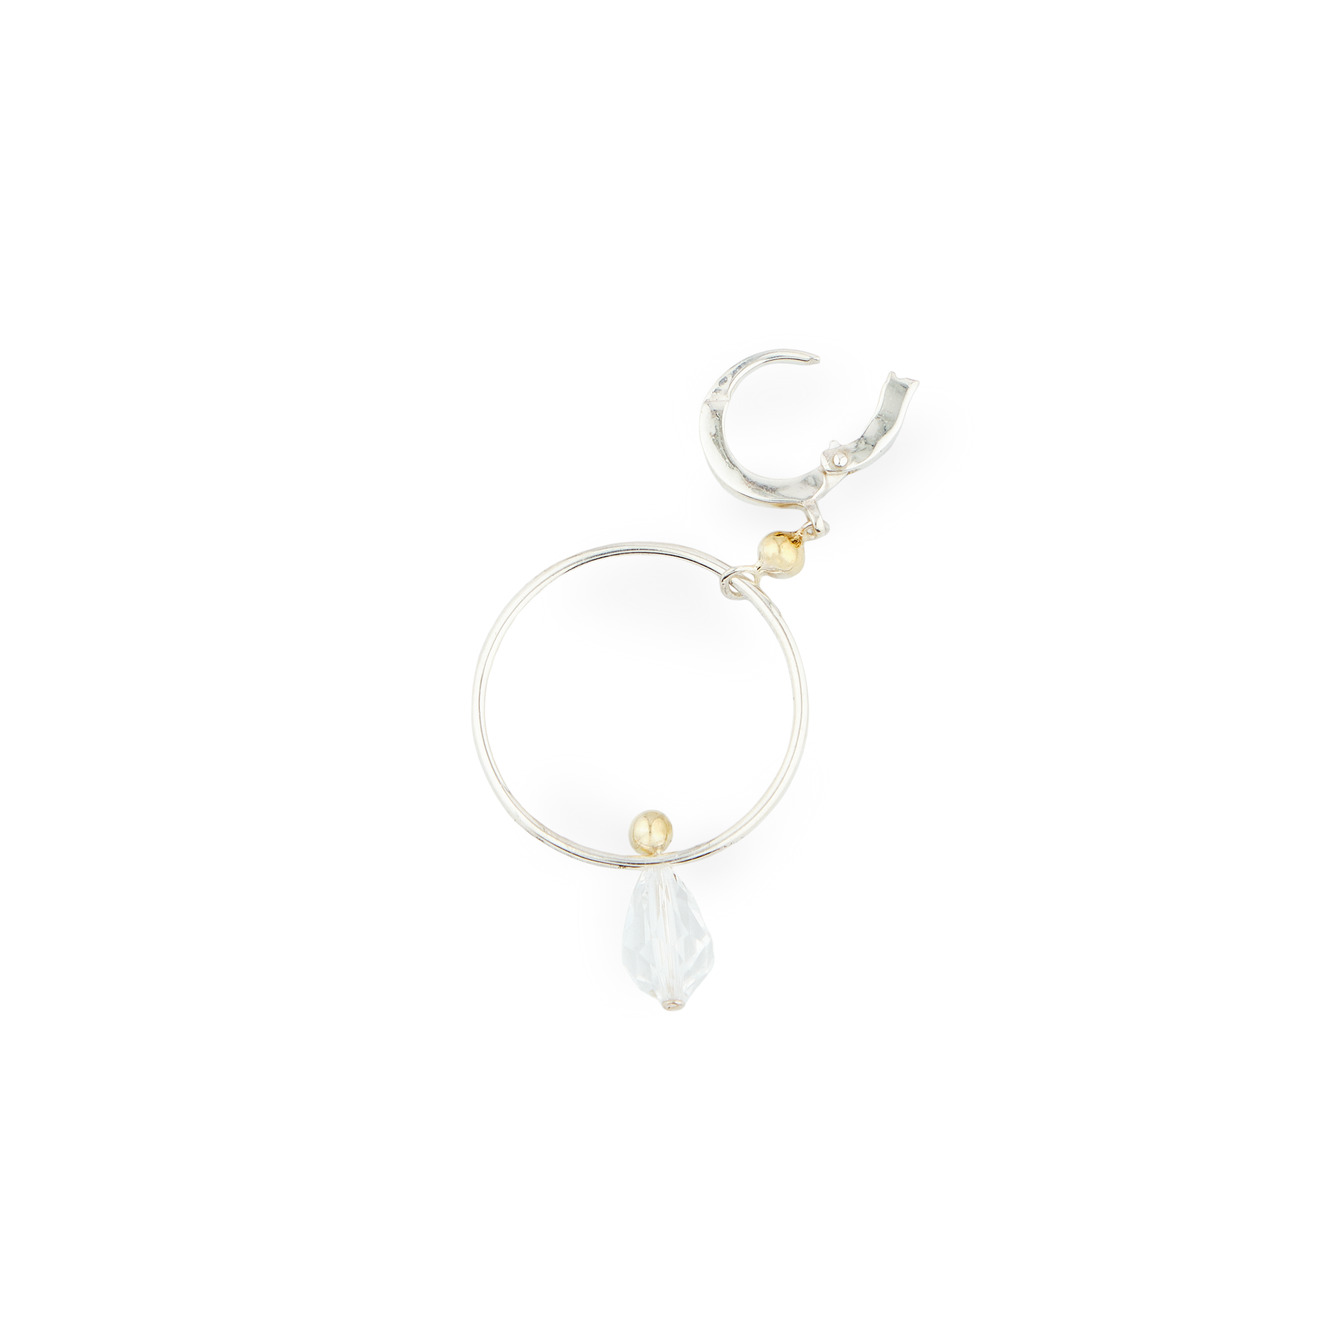 УРА jewelry Моносерьга из серебра с кристаллами сваровски opus jewelry моносерьга из серебра net cross earring с цитрином